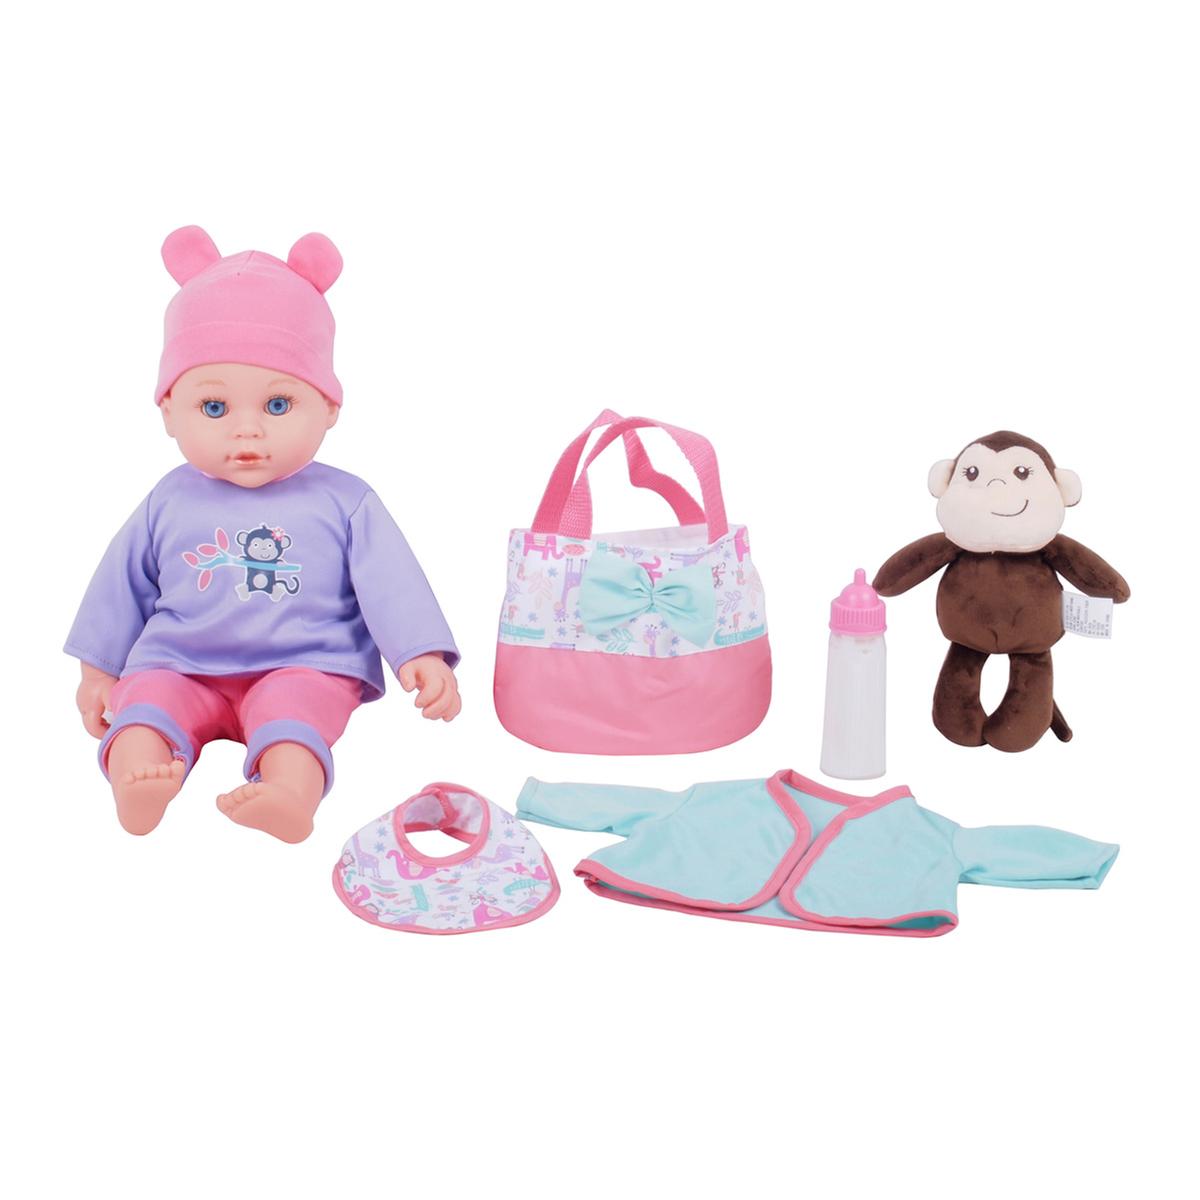 Bebé com Mascote Dream Collection (vários modelos), YM bonecas com  funcionalidade eletrónica